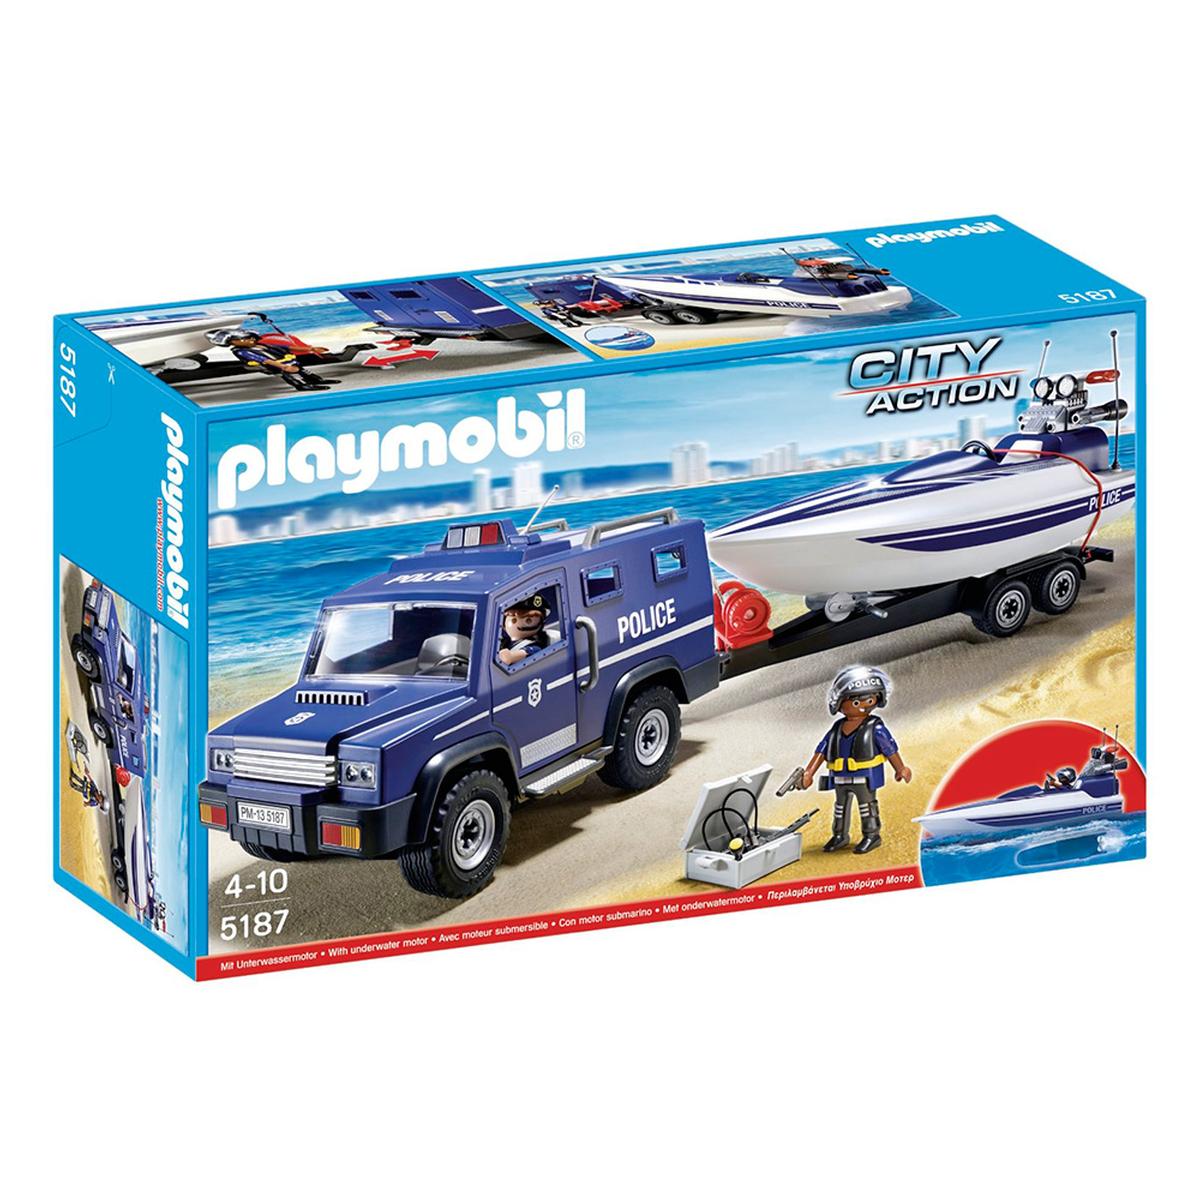 Playmobil - Coche de Policia con Lancha - 5187 | City Action Policia |  Toys"R"Us España